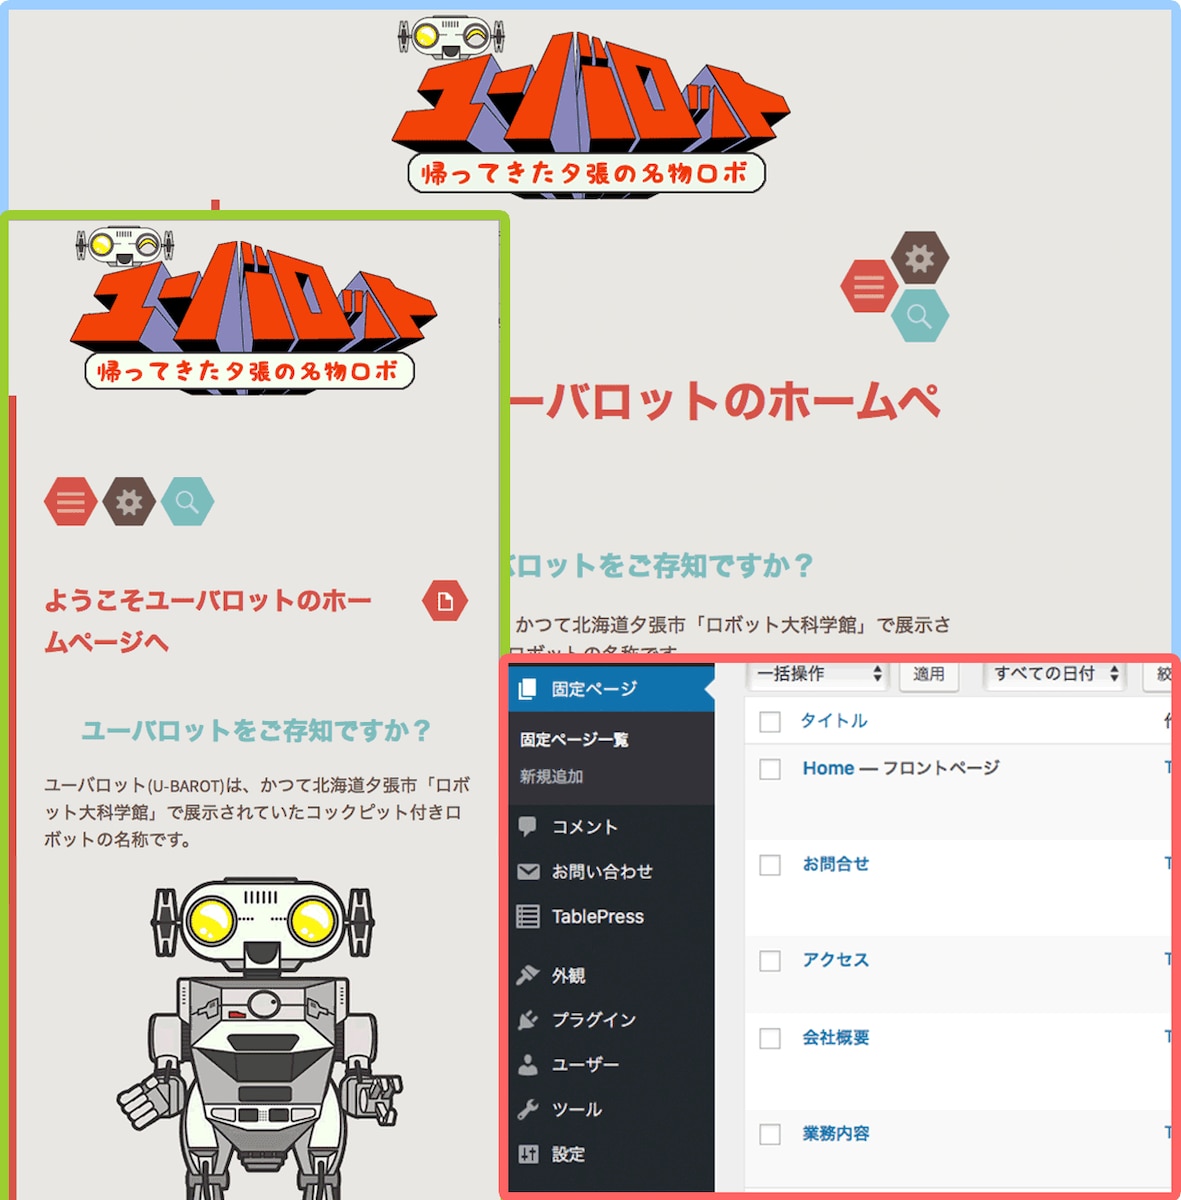 北海道夕張市の名物ロボット ユーバロット ホームページ